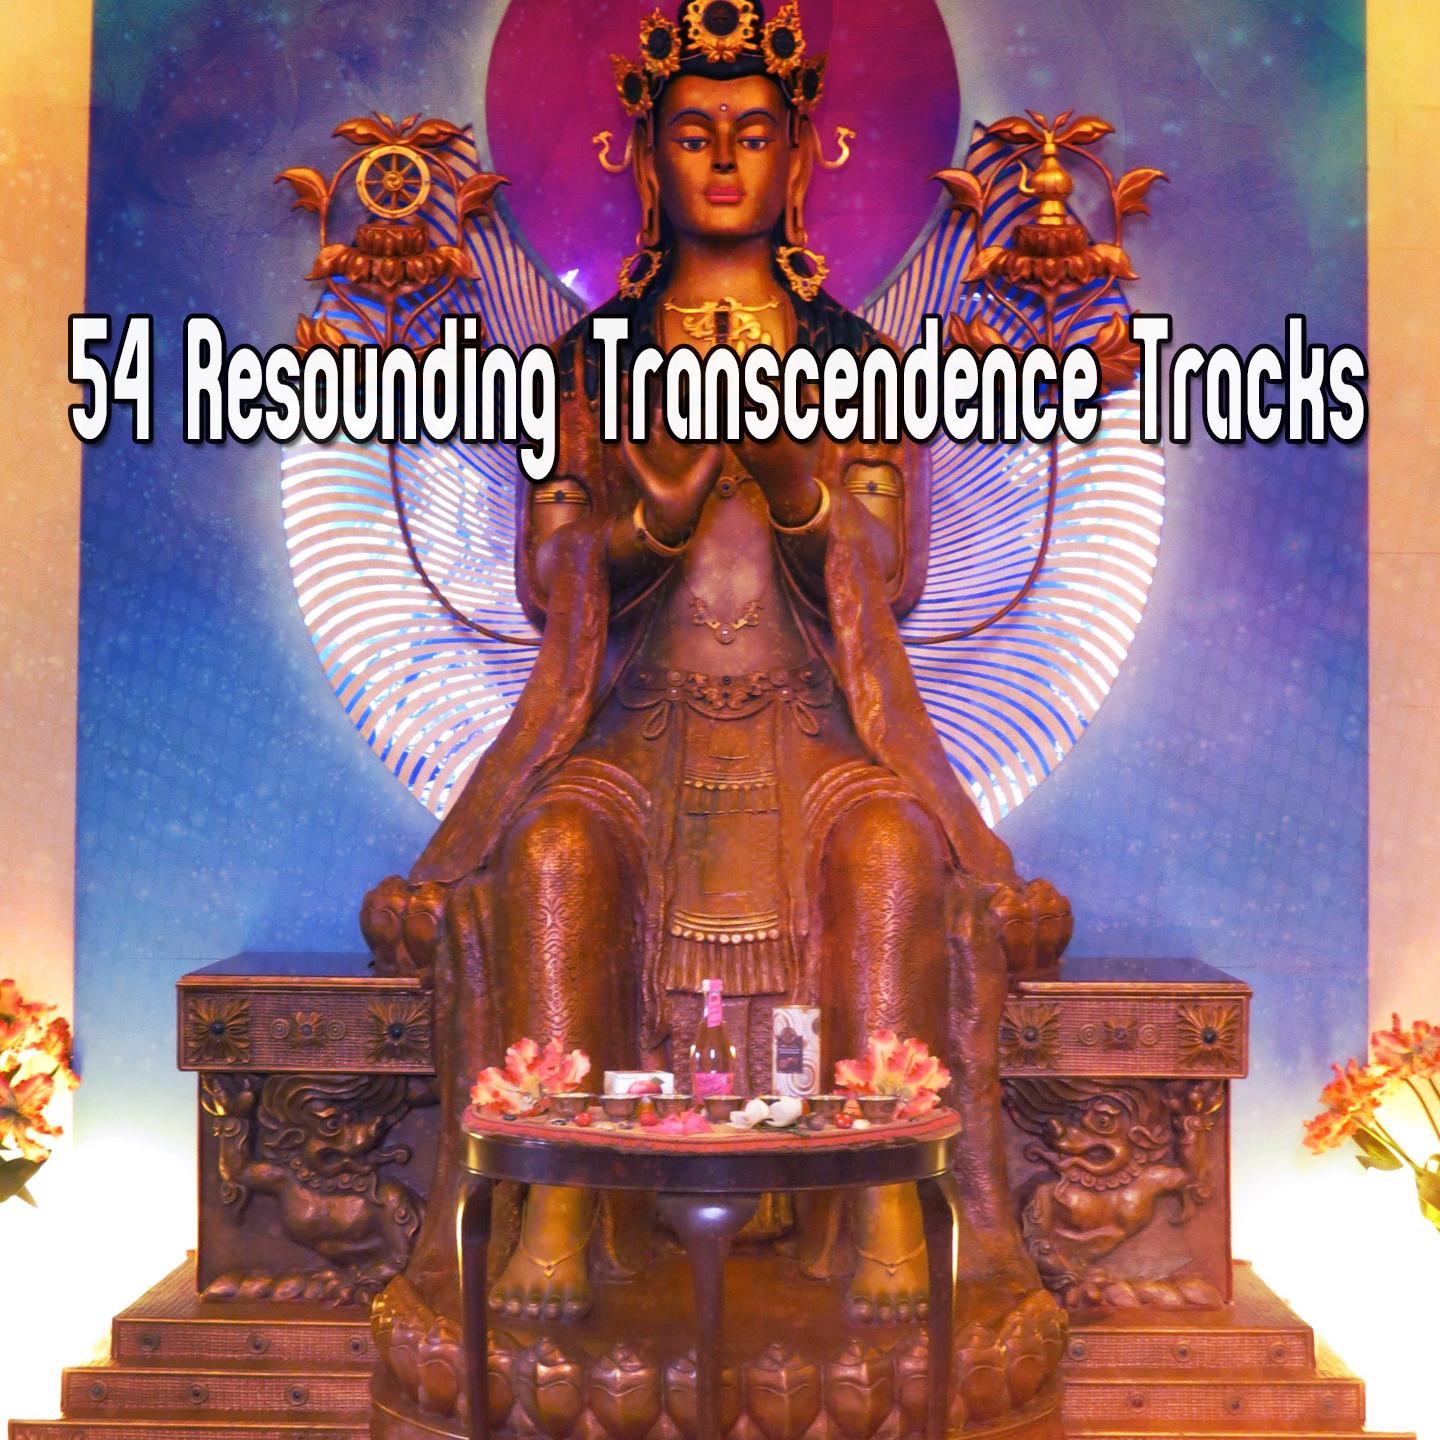 54 Resounding Transcendence Tracks